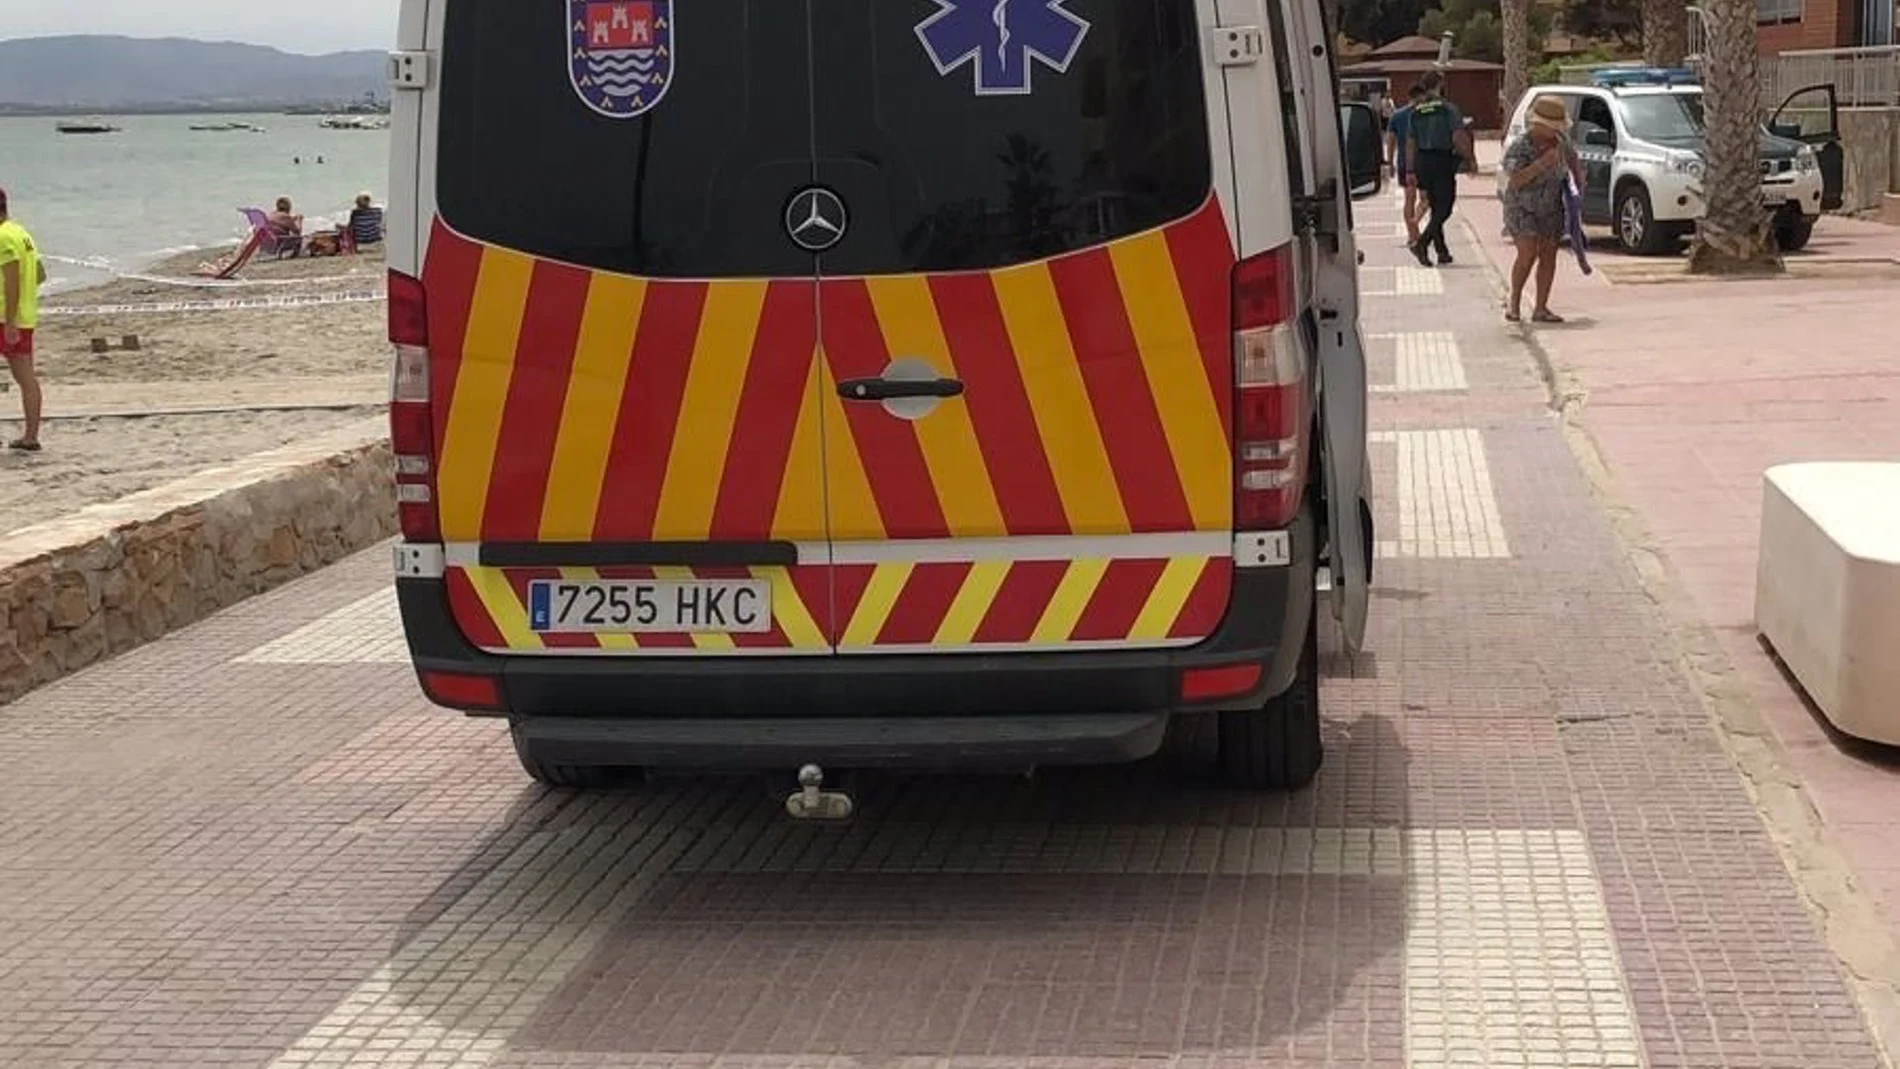 Ambulancia en Los Alcázares